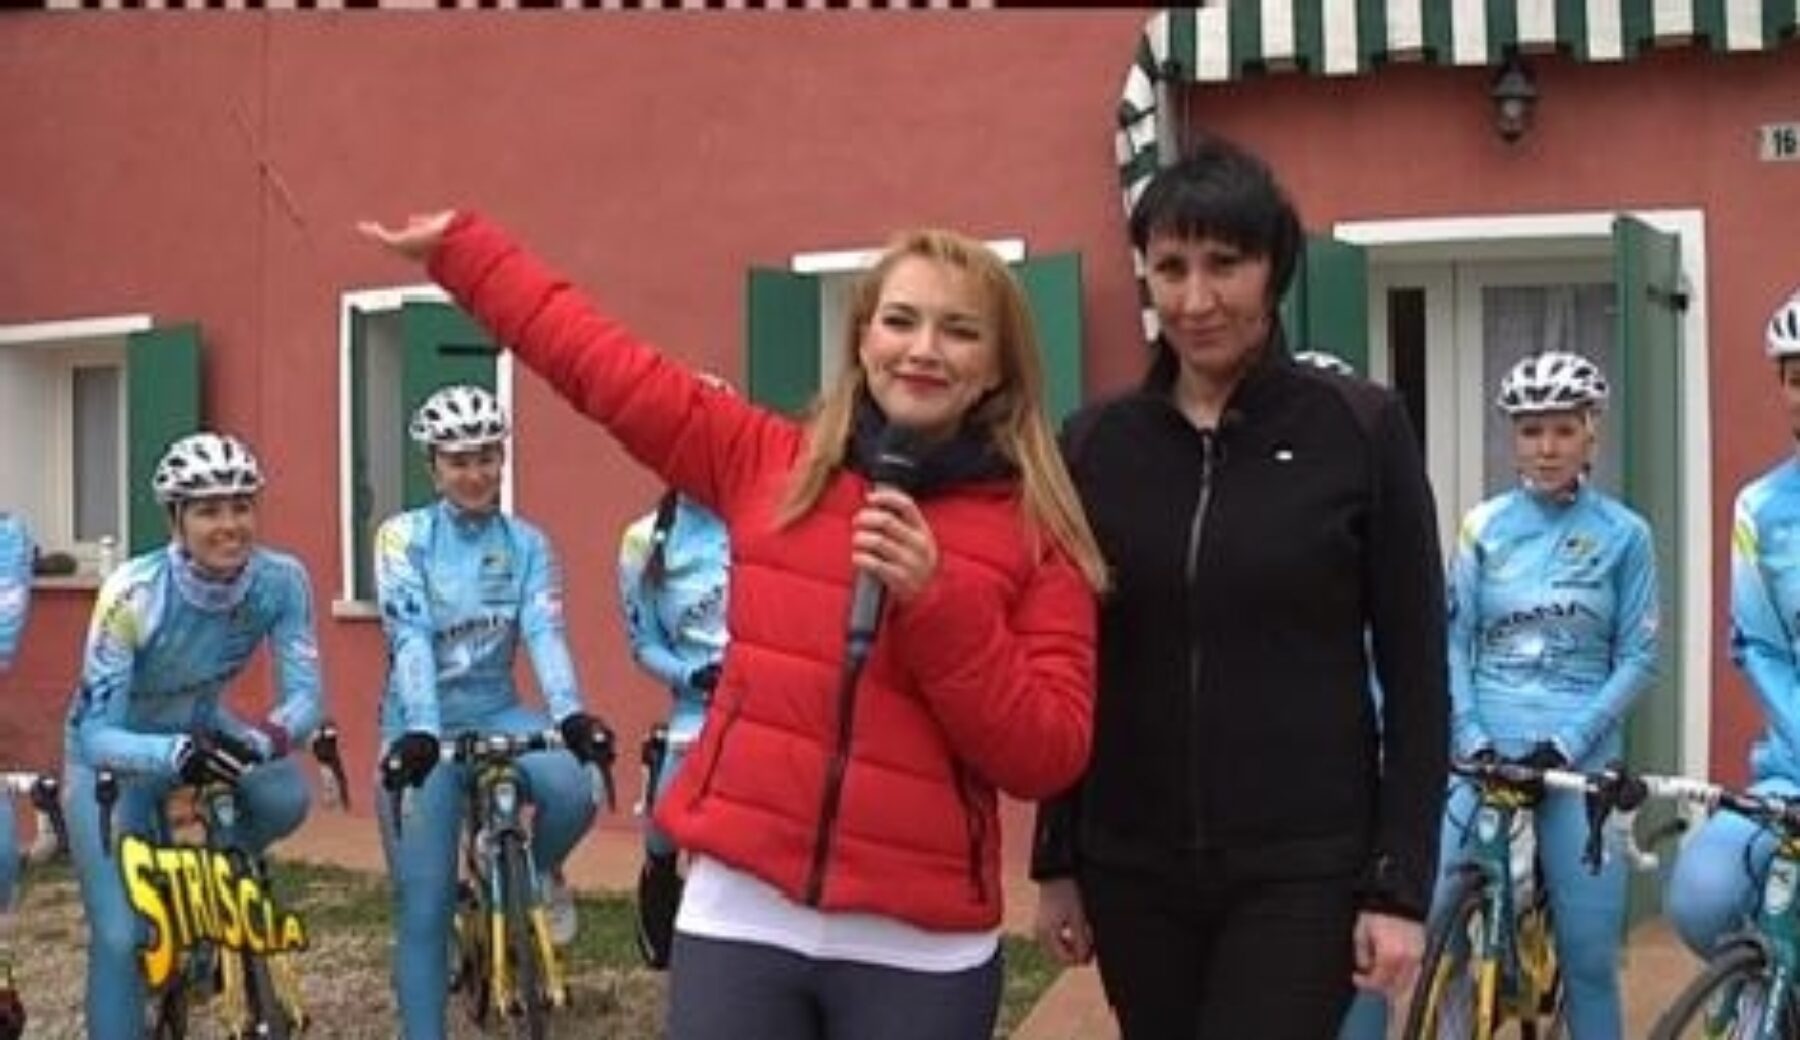 Le donne musulmane imparano ad andare in bici. A Striscia, la testimonianza della ciclista musulmana Zulfia Zabirova.